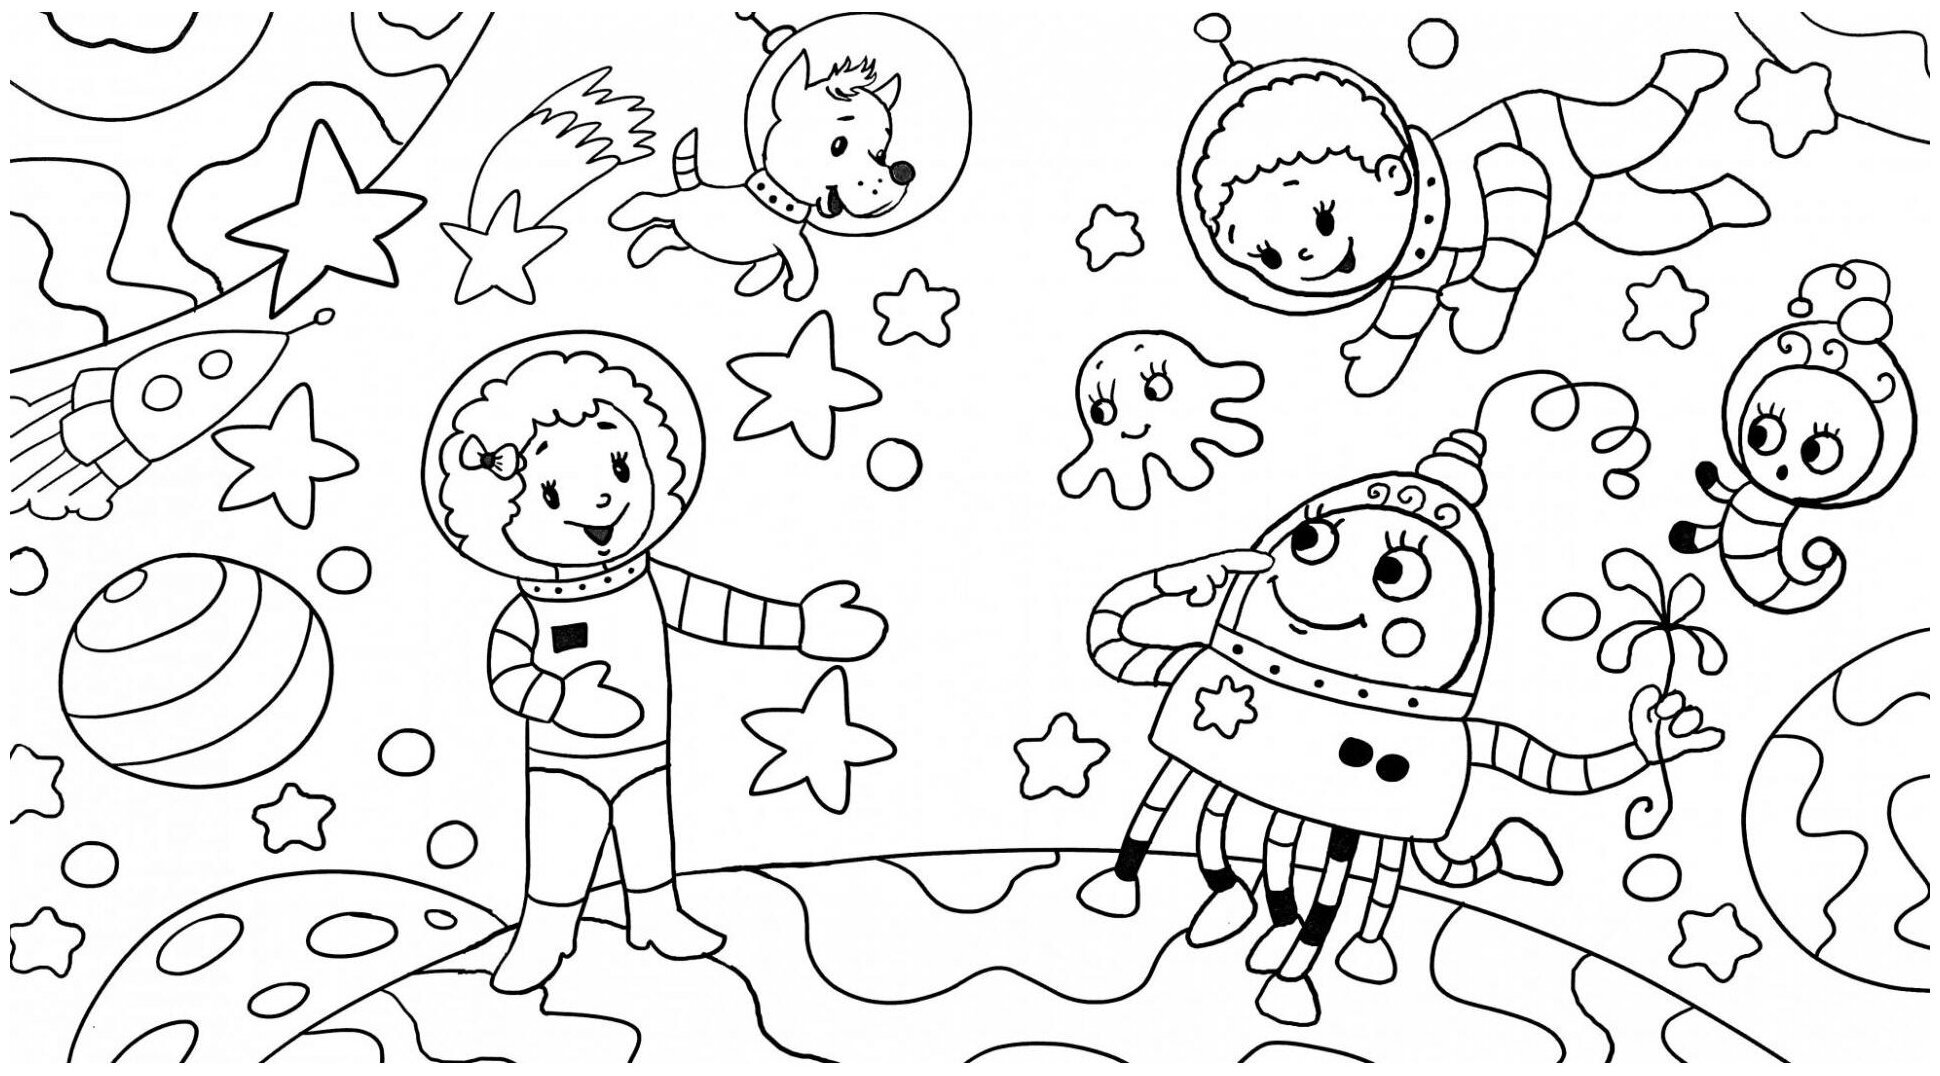 Раскраска космос 5 лет. Раскраска. В космосе. Космос раскраска для детей. Космические раскраски для детей. Раскраски для детей космас.